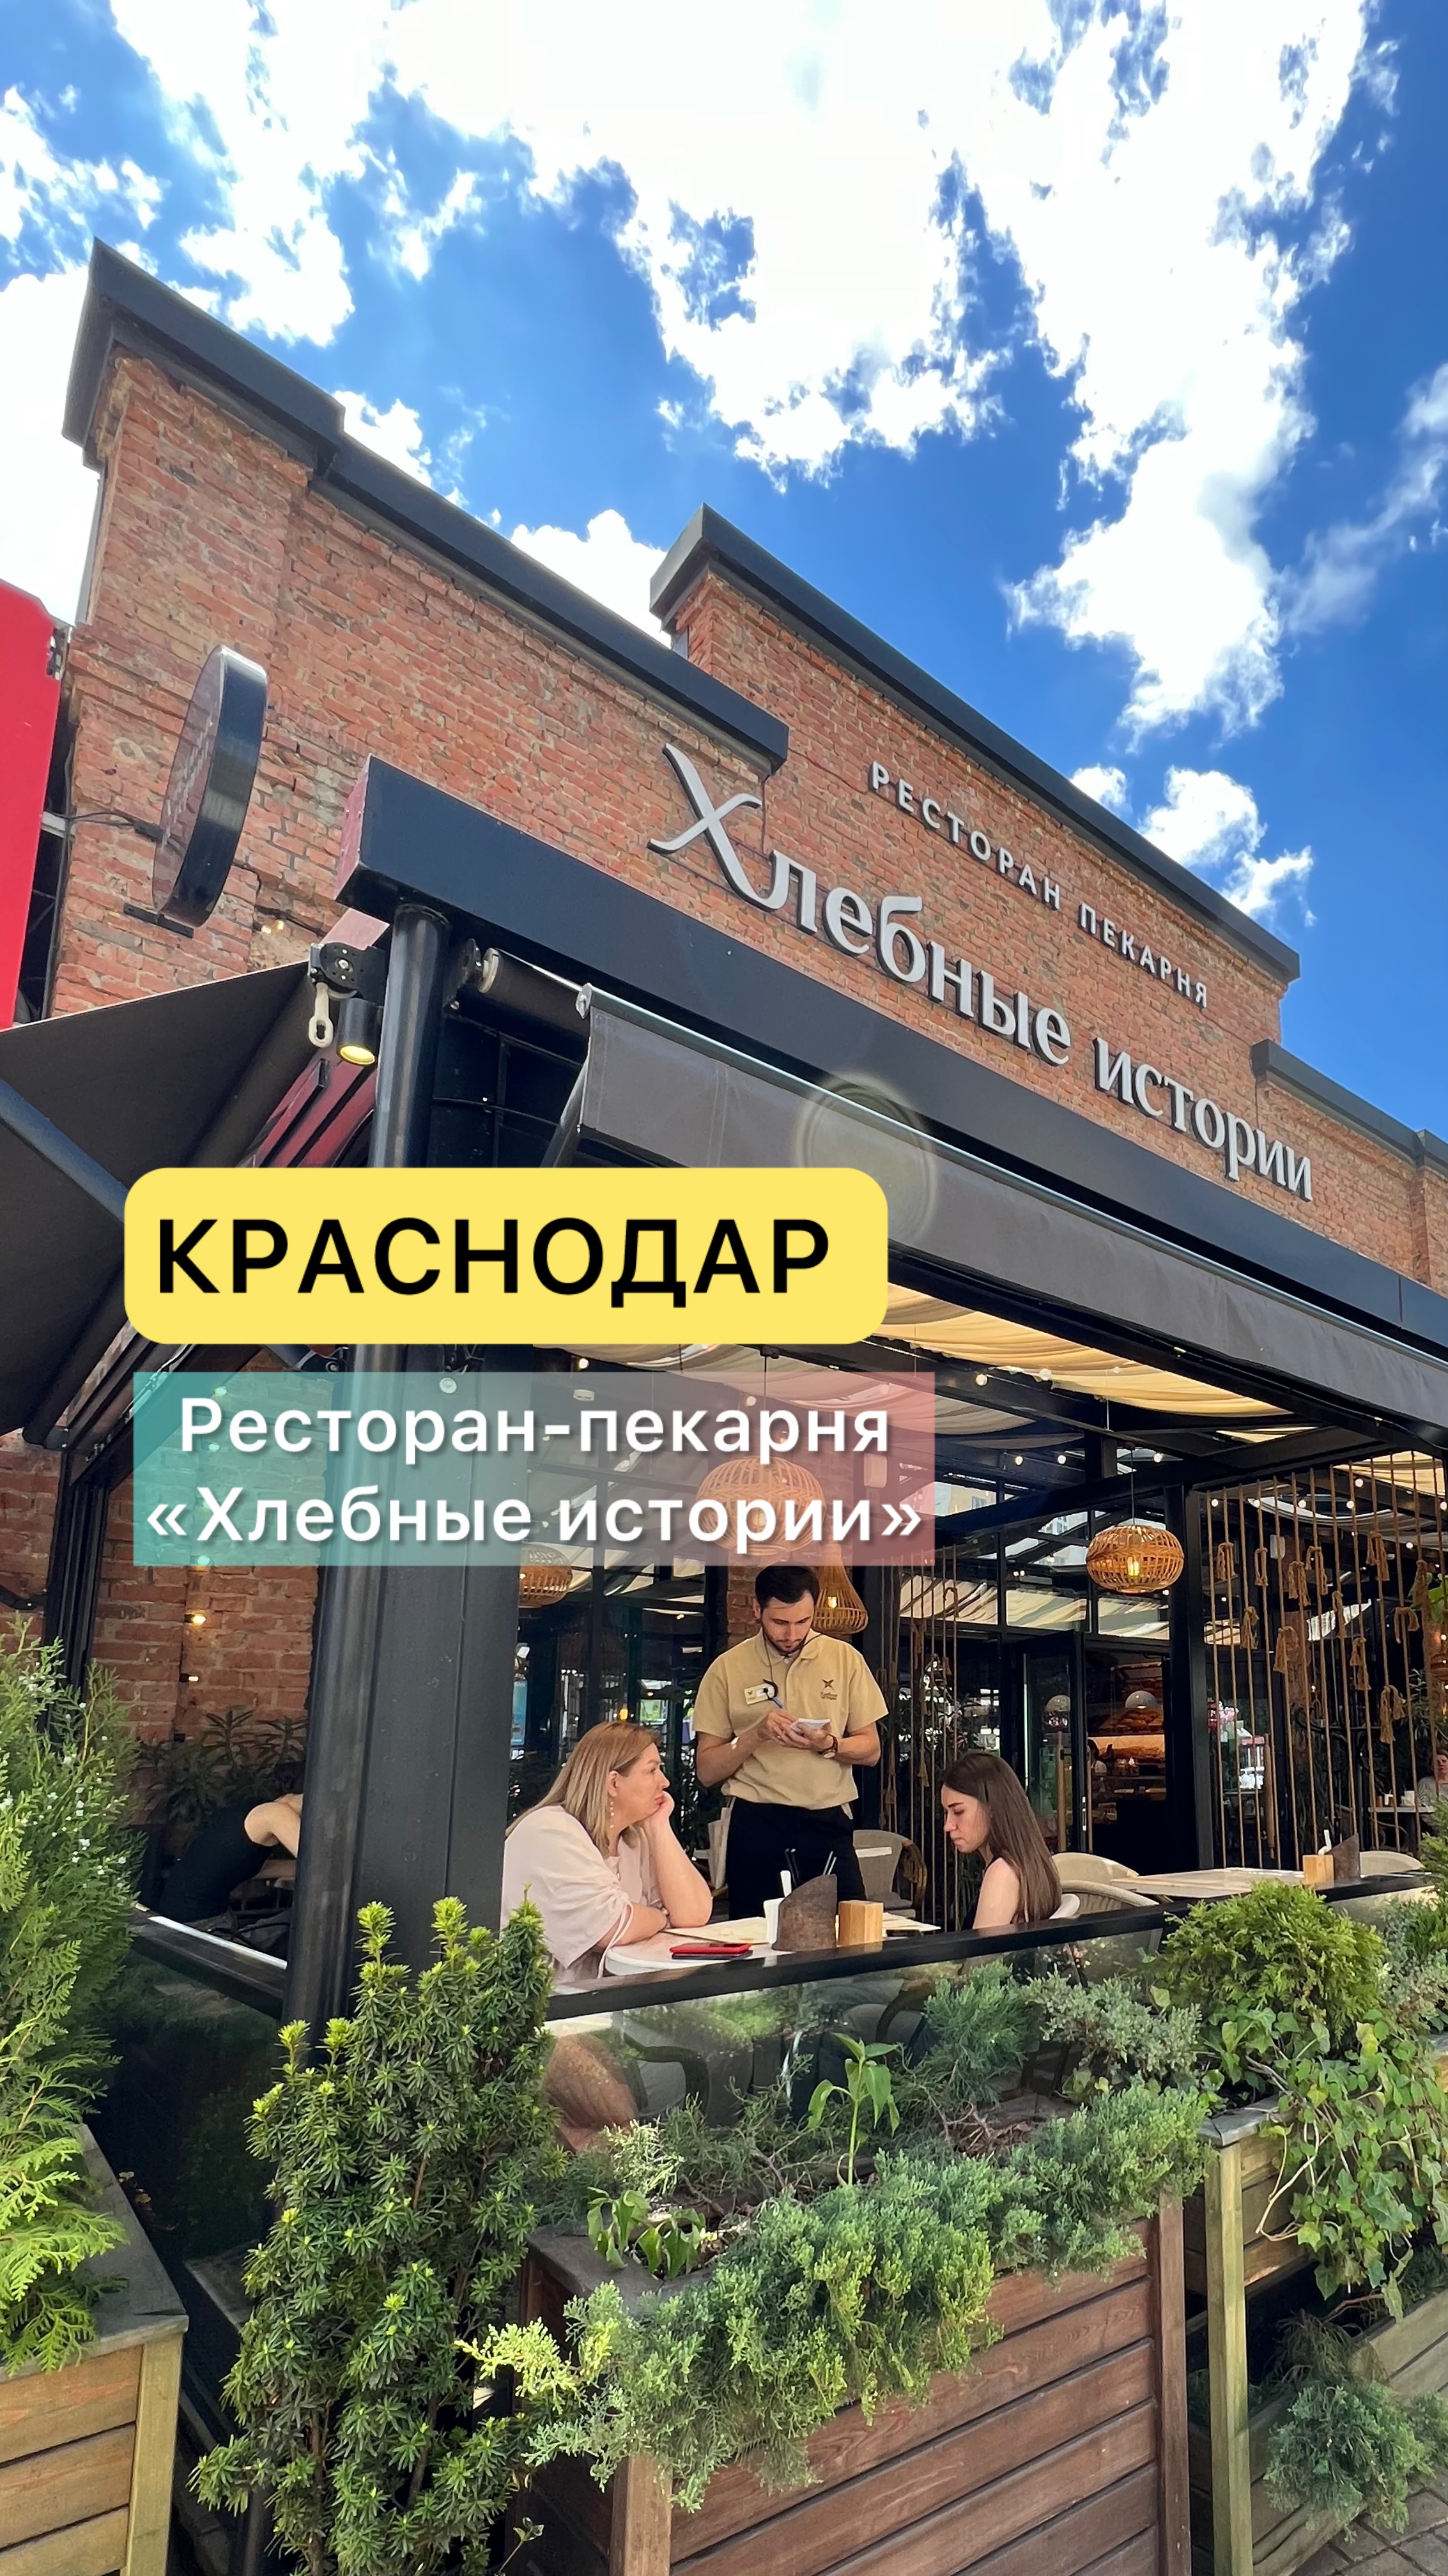 Краснодар. Ресторан-пекарня «Хлебные истории»